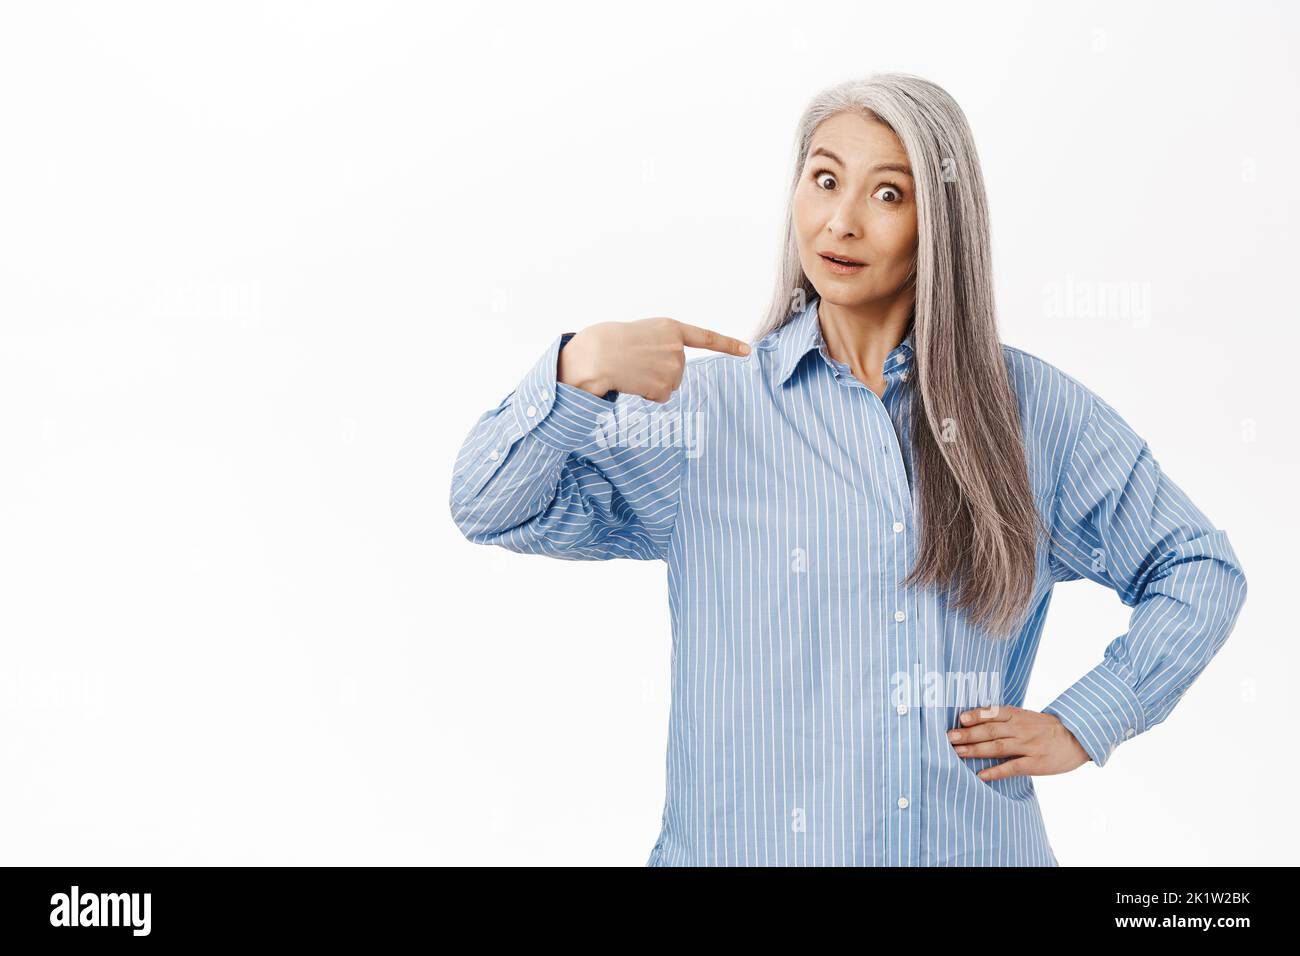 Surprise vieille femme asiatique, mère aux cheveux gris, se pointant avec incrédulité, debout sur fond blanc de studio Banque D'Images